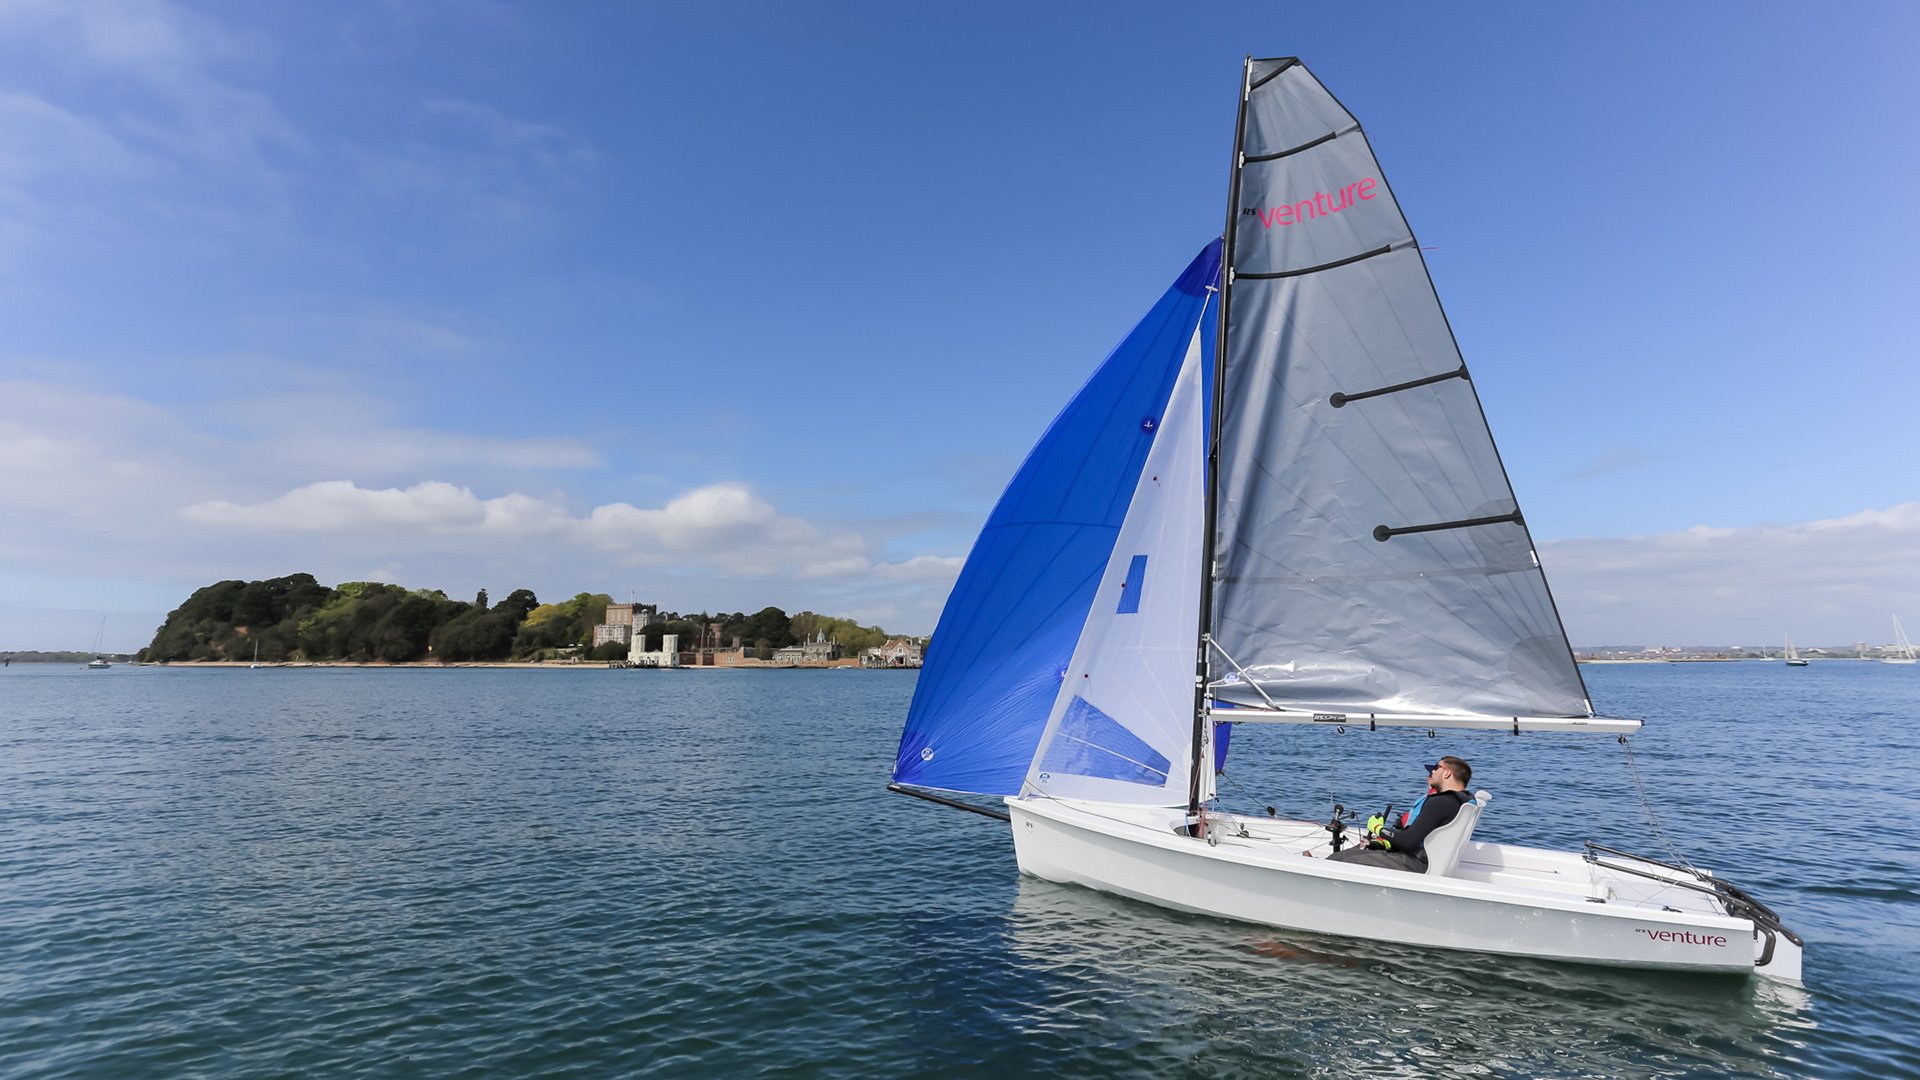 racing small sailboats